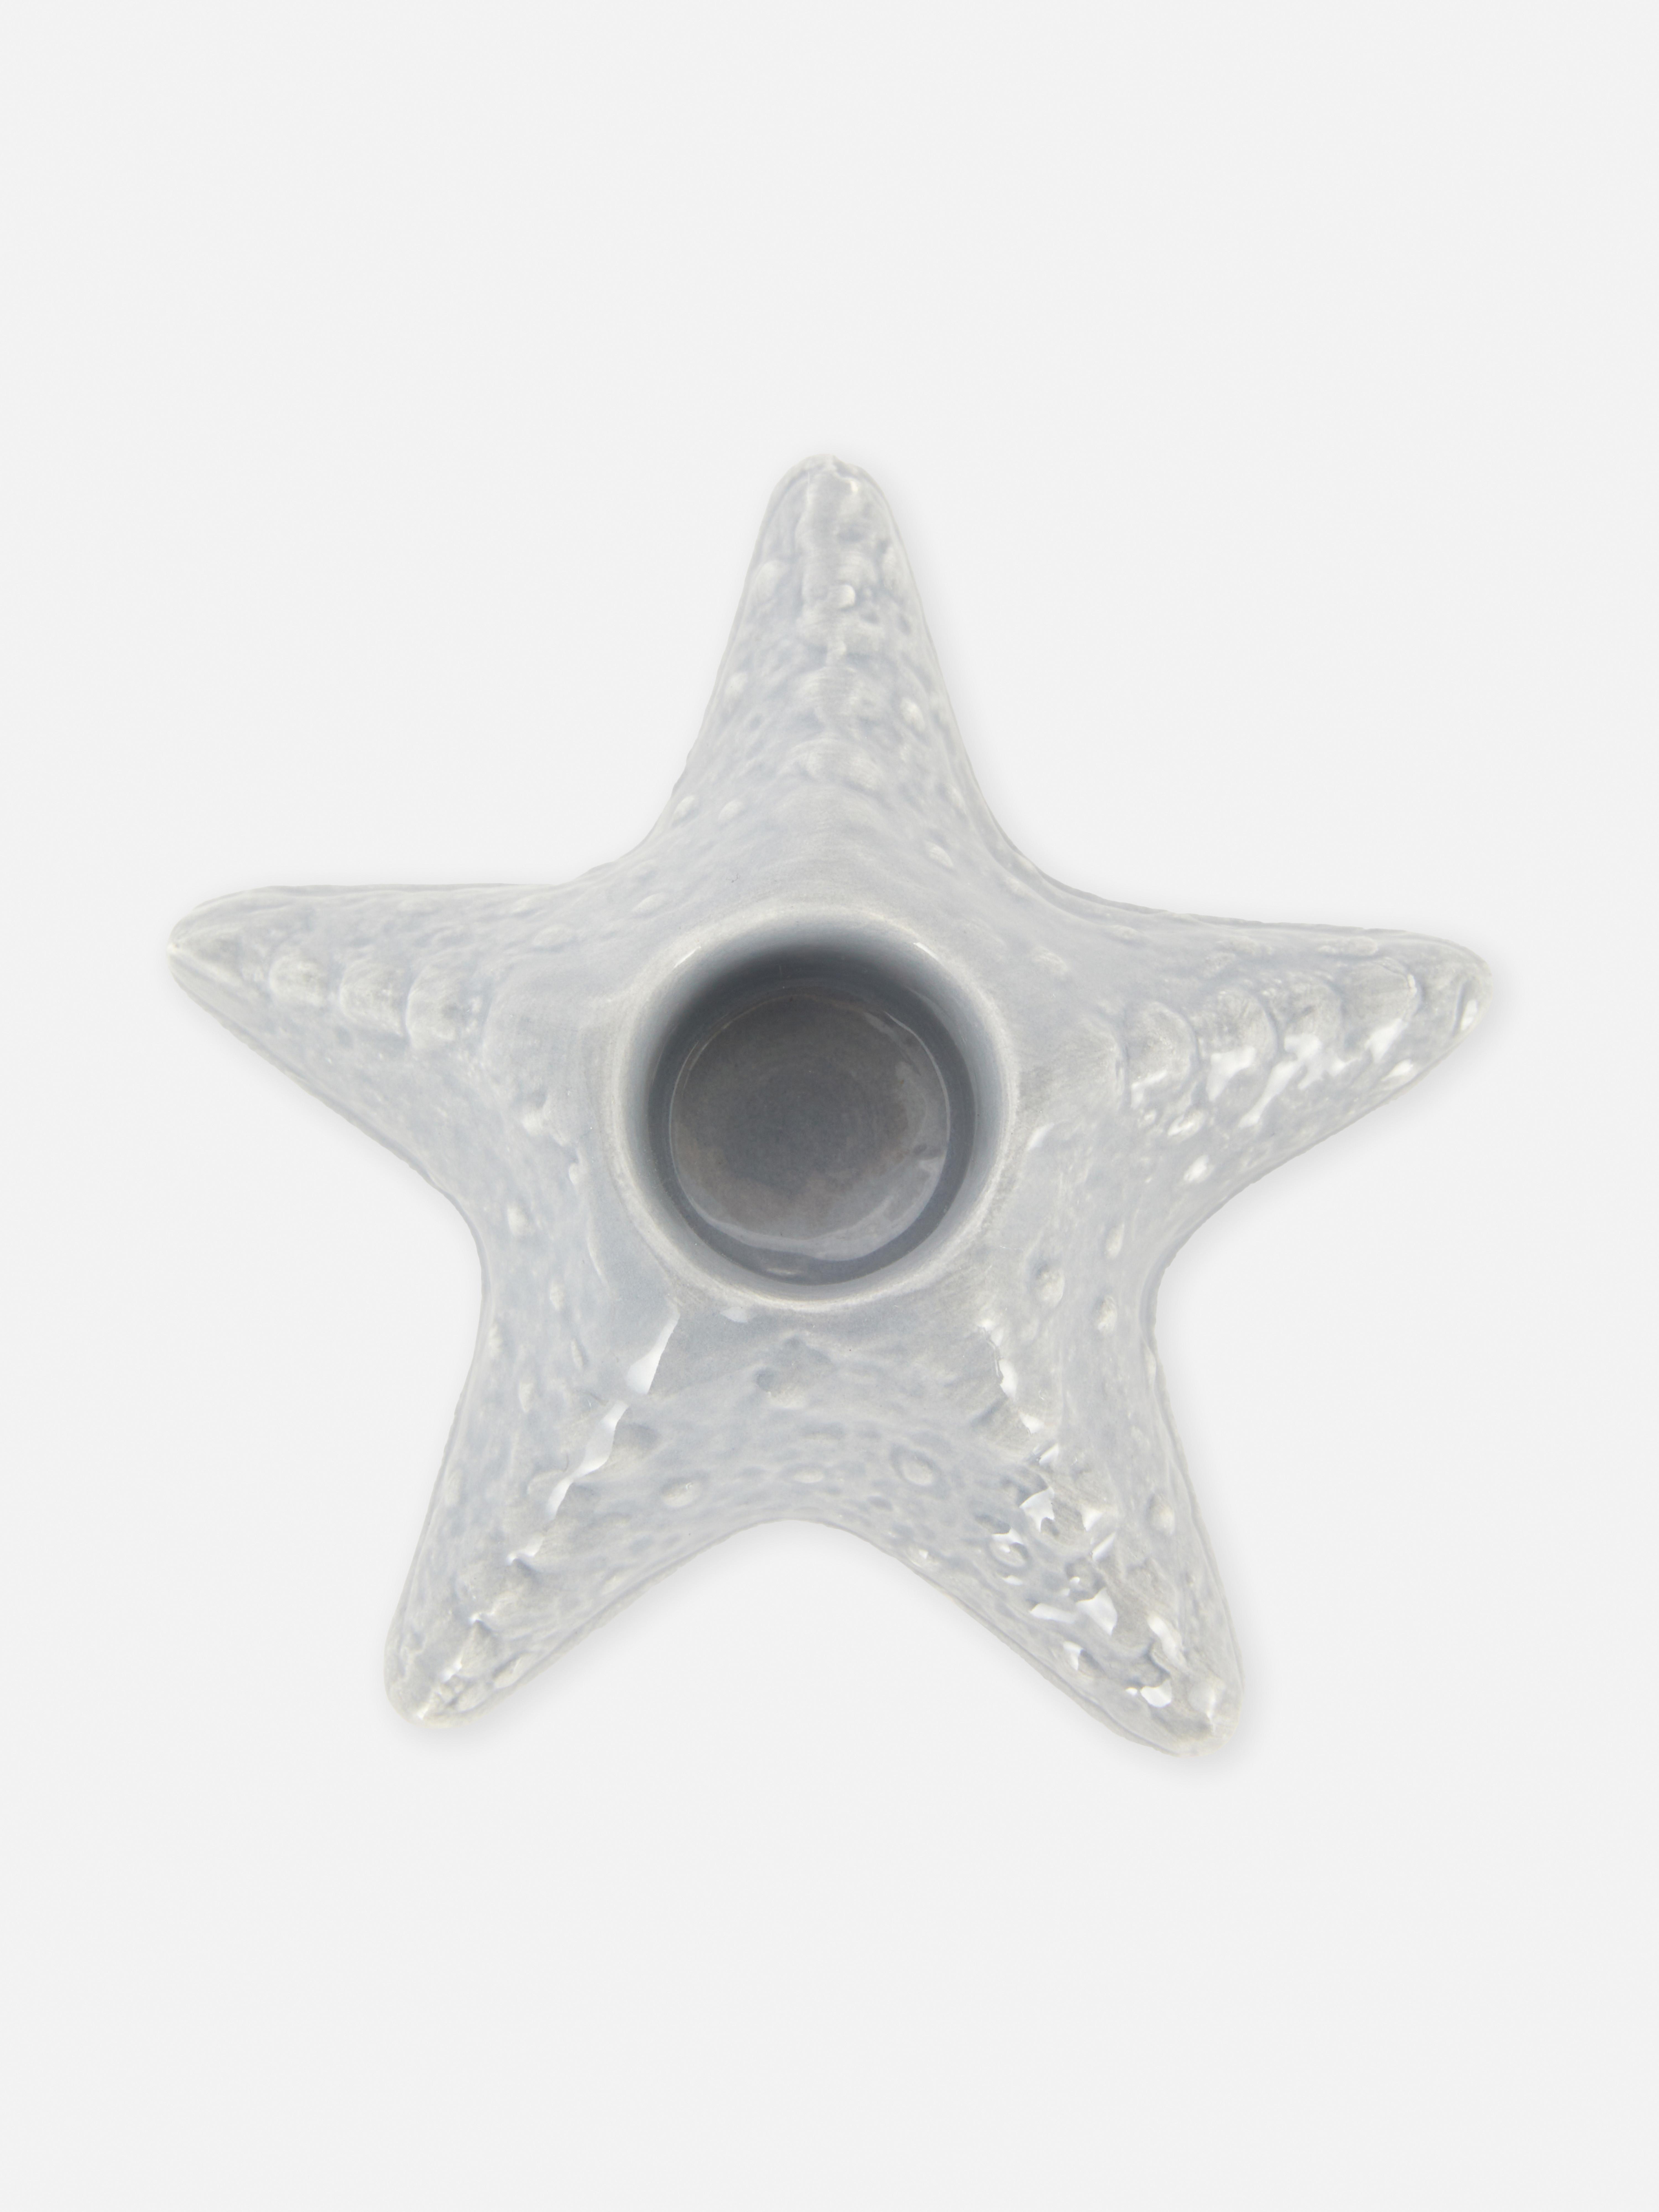 Portacandele a forma di stella marina